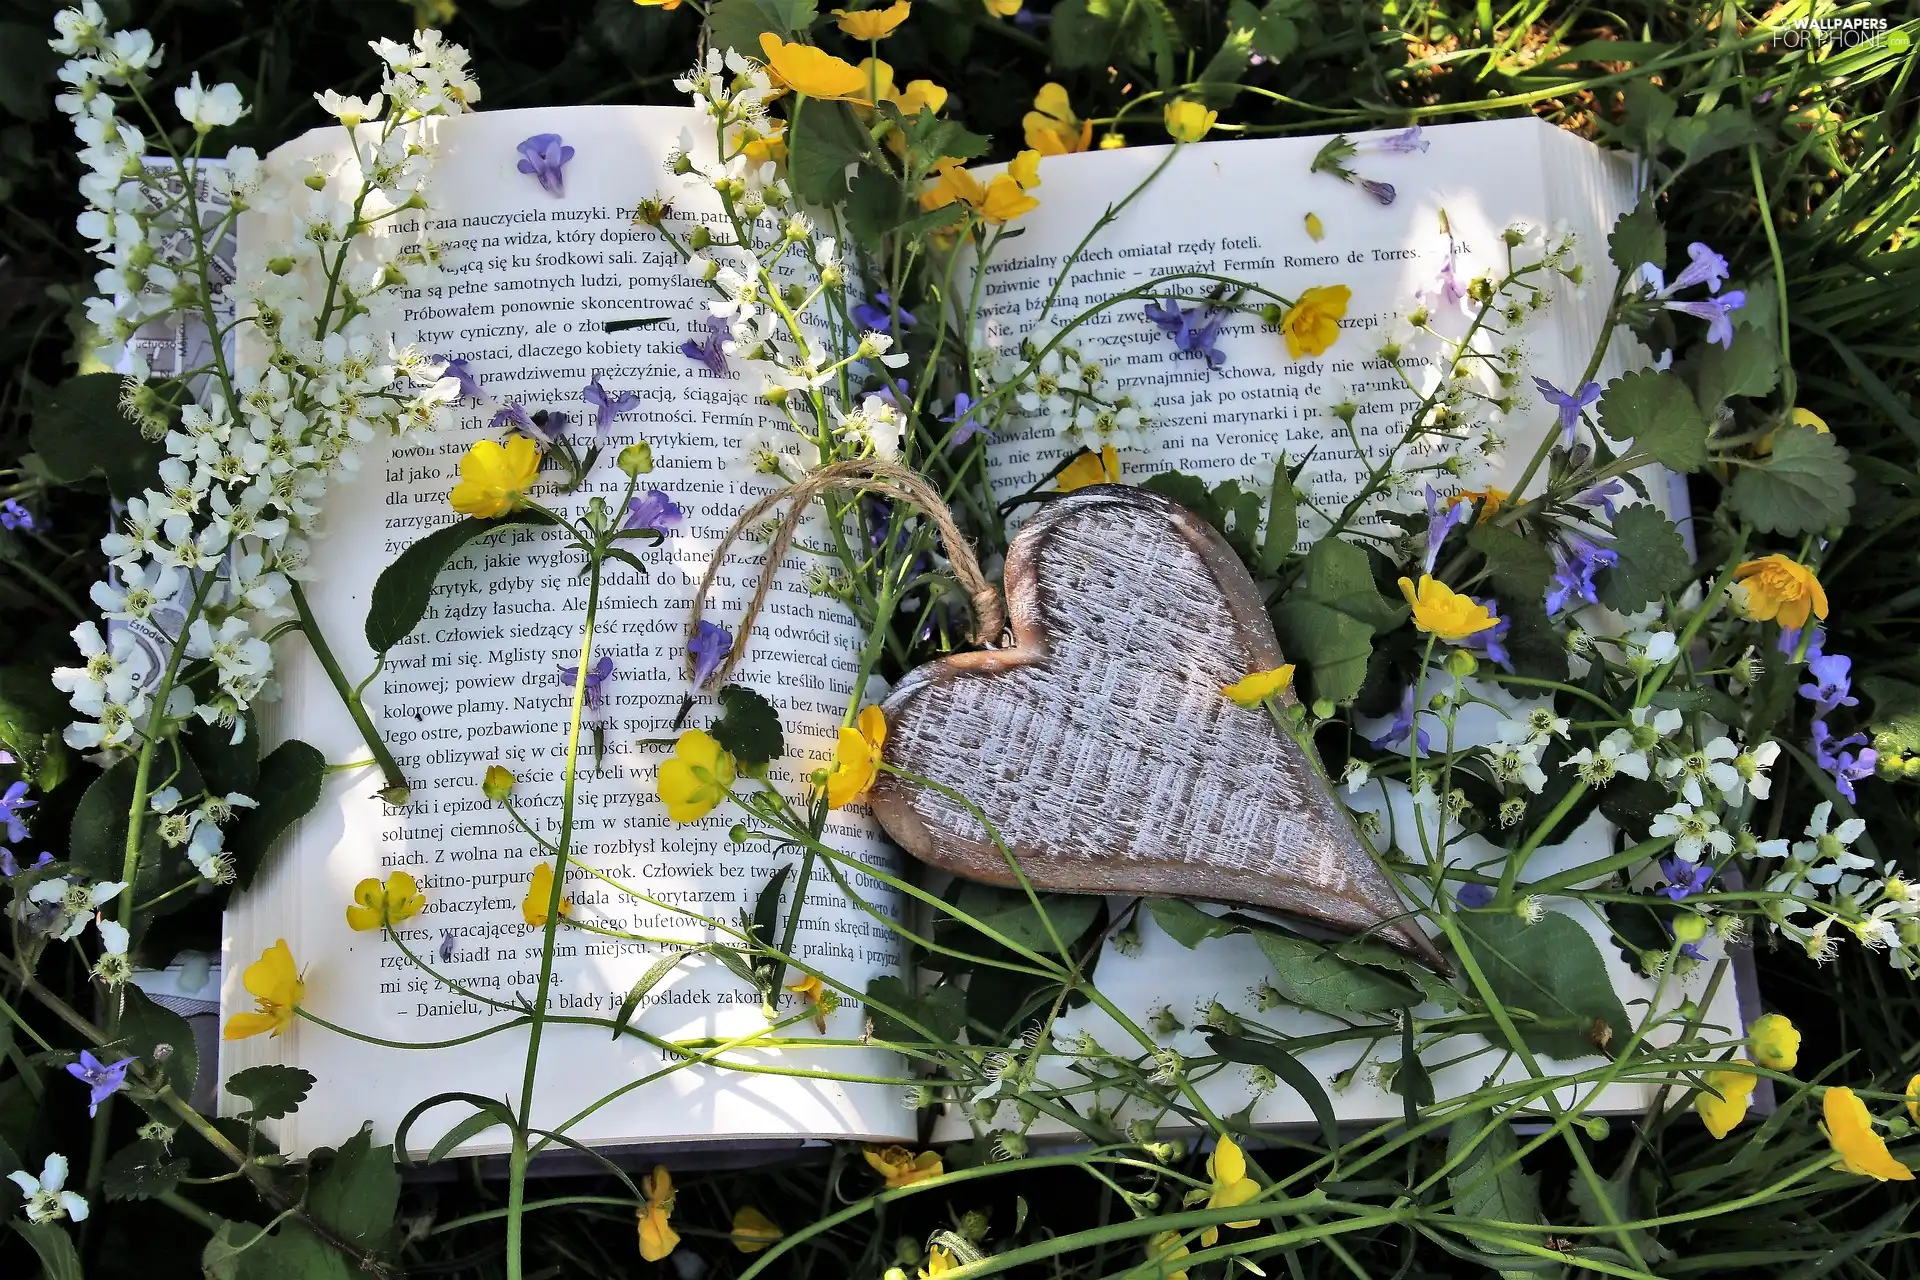 Flowers, Book, Heart teddybear, Pendant, Wildflowers, Meadow